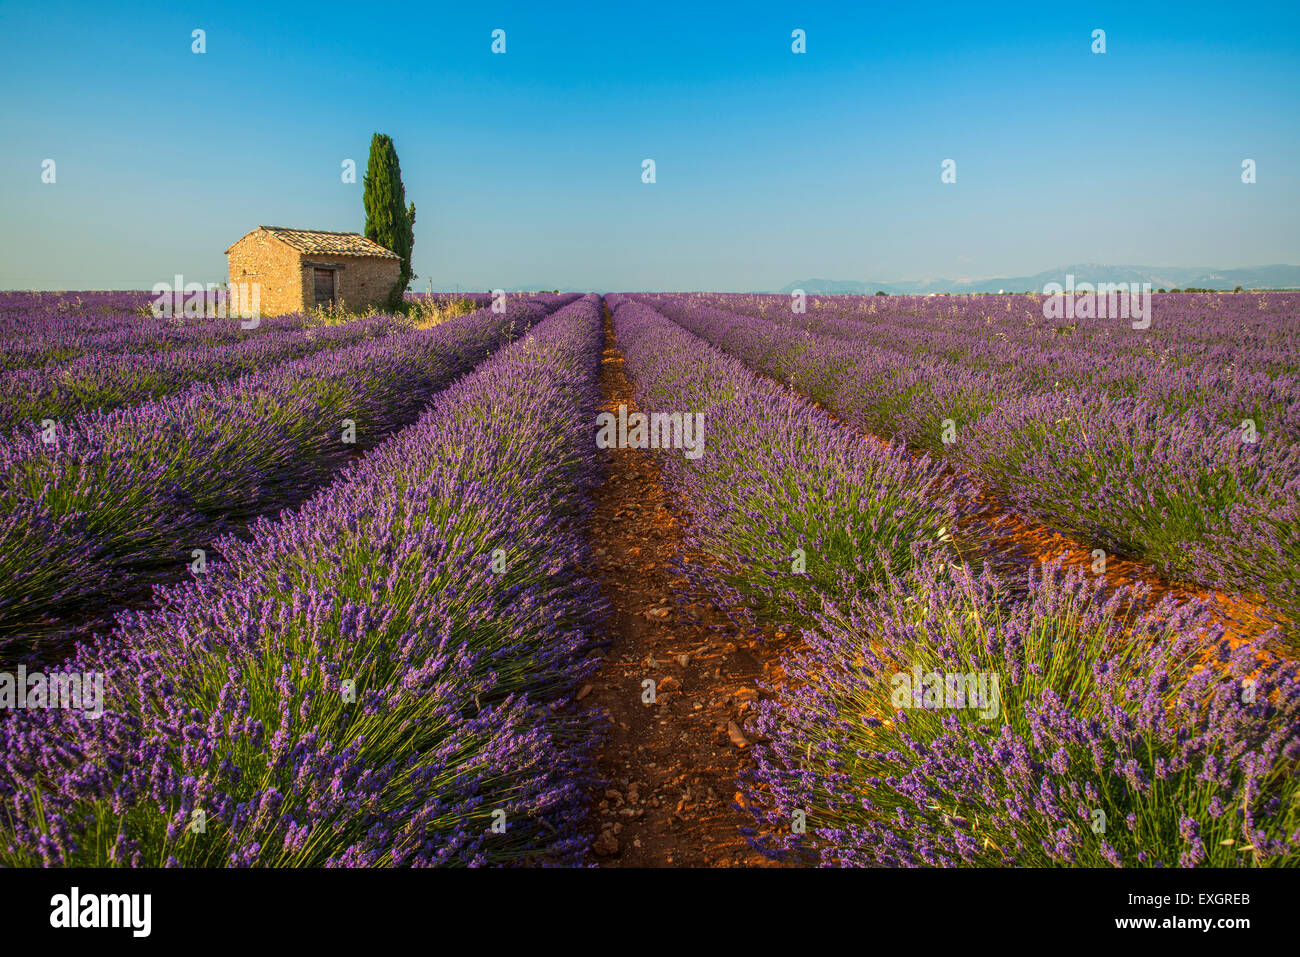 Lavendel Feld mit einsamen Stein Hütte und Zypressen Baum bei Sonnenuntergang, Plateau de Valensole, Provence, Frankreich Stockfoto